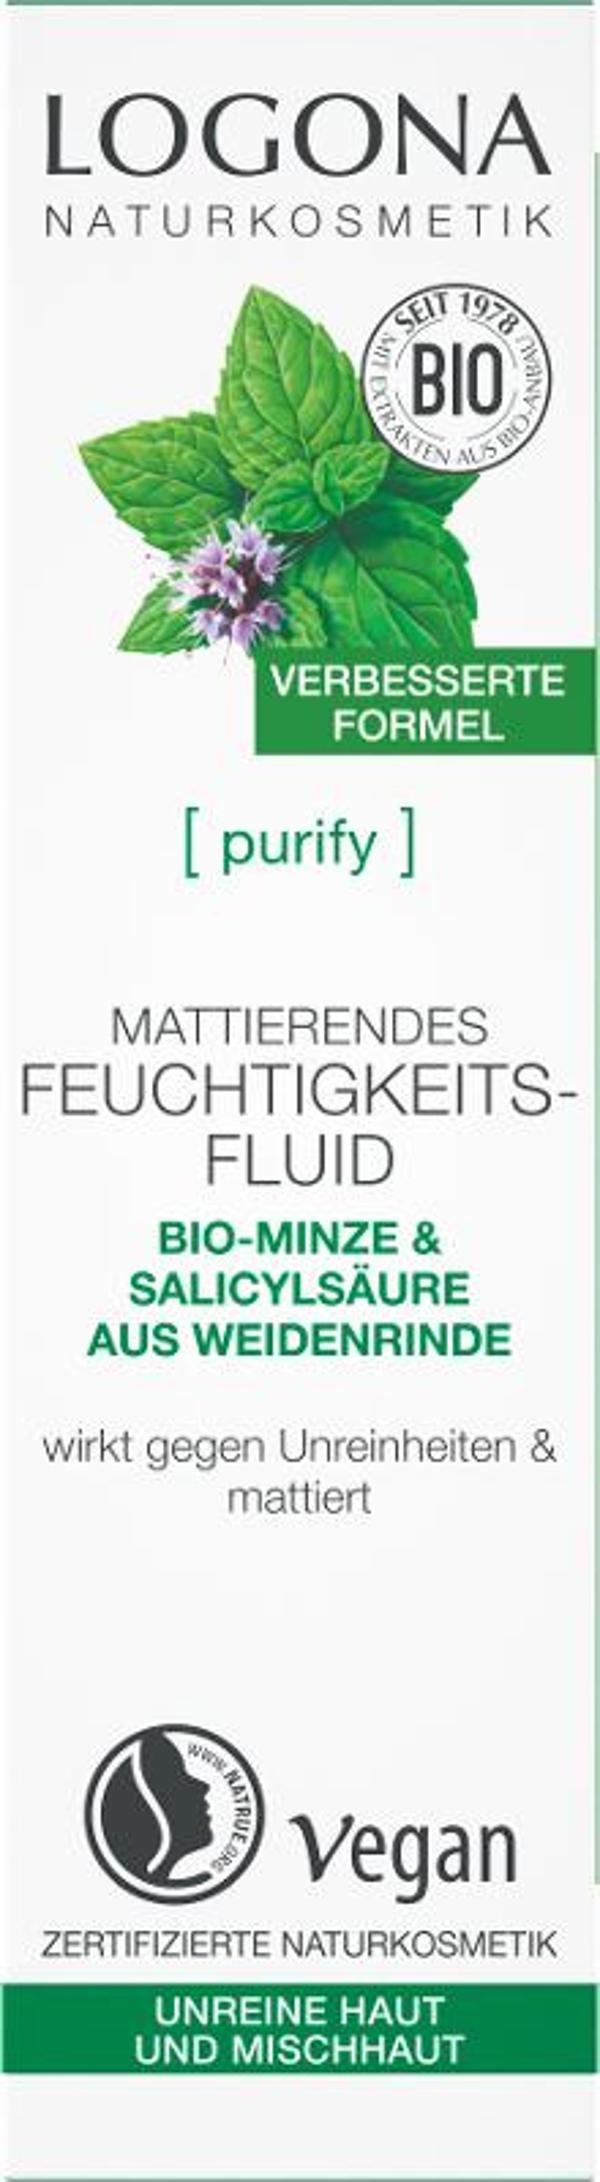 Produktfoto zu PURIFY Mattierendes Feuchtigkeitsfluid 30ml